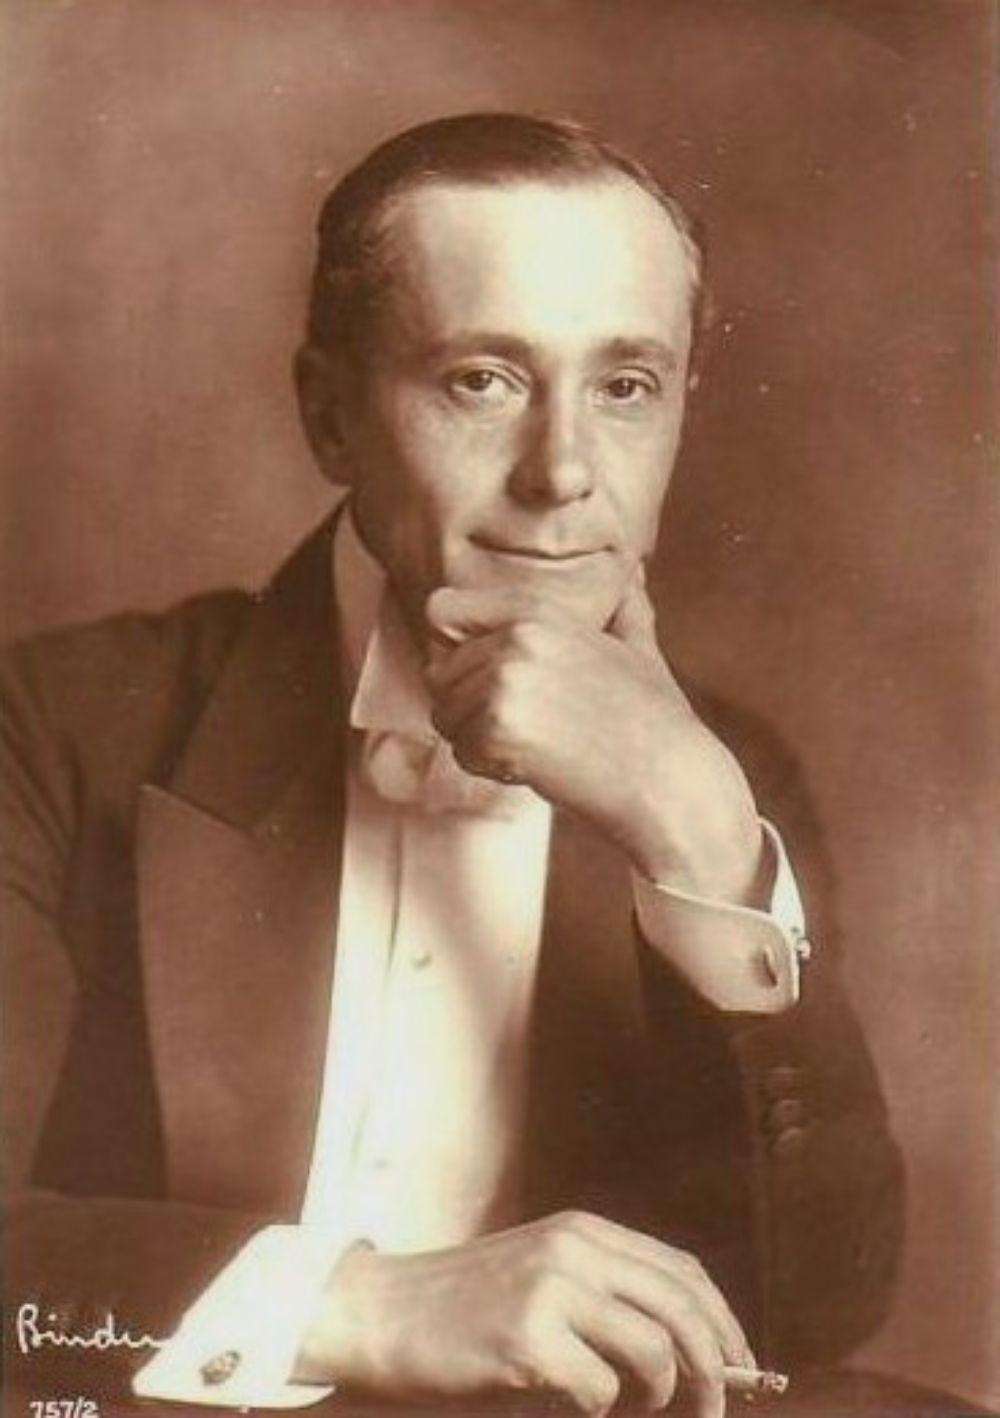 Abel circa 1925